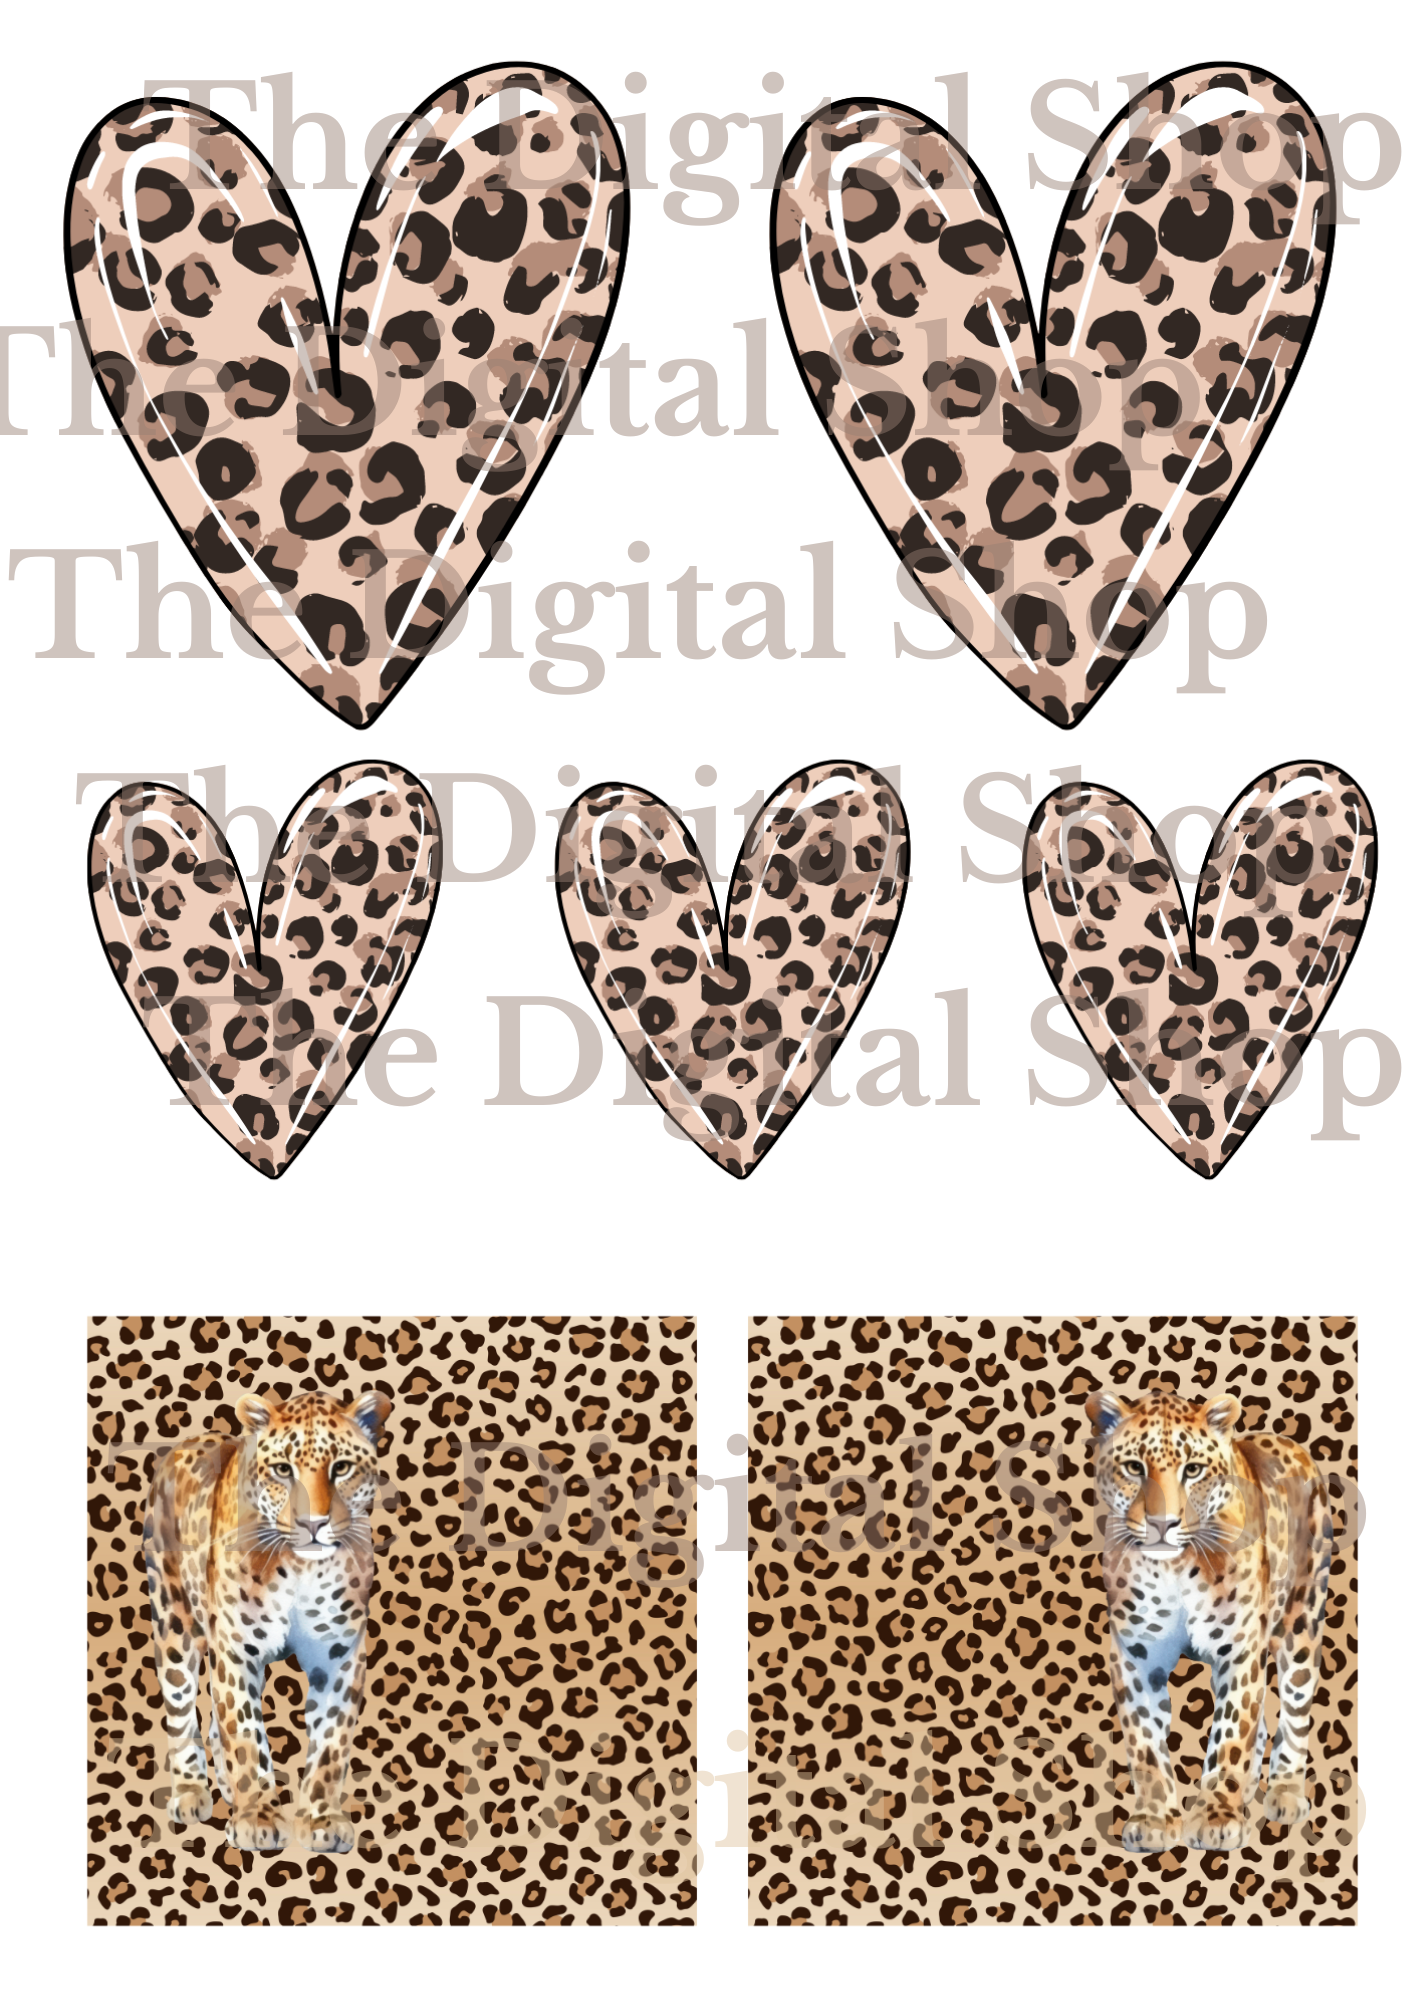 Digitala papper för scrapbooking - Leopardpaketet